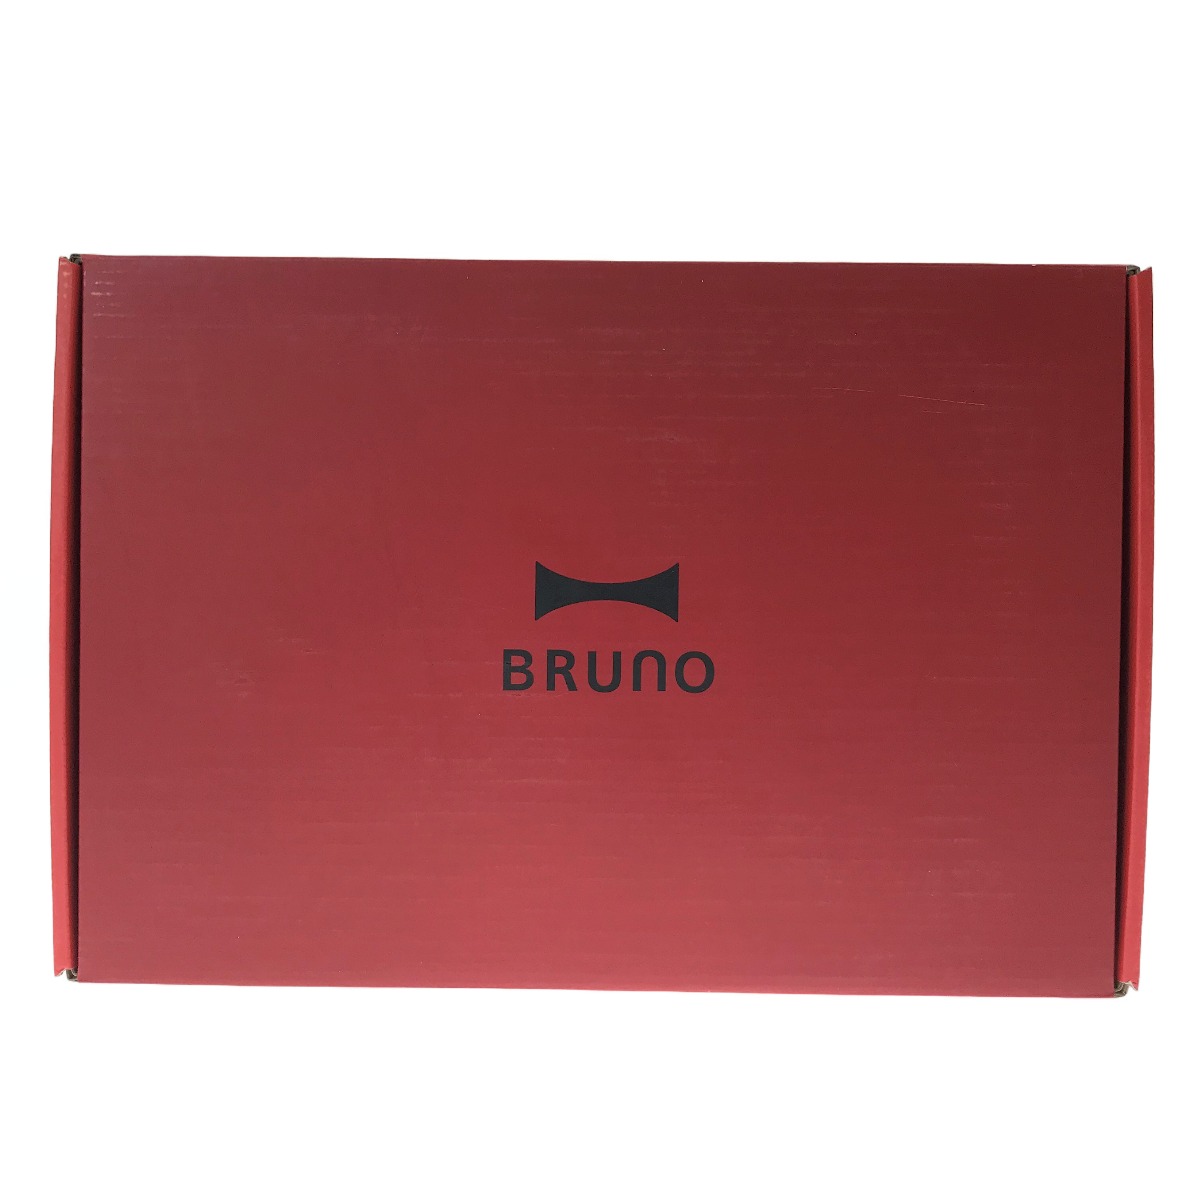 ##【中古】BRUNO ブルーノ コンパクトホットプレート レッド BOE021 Aランク